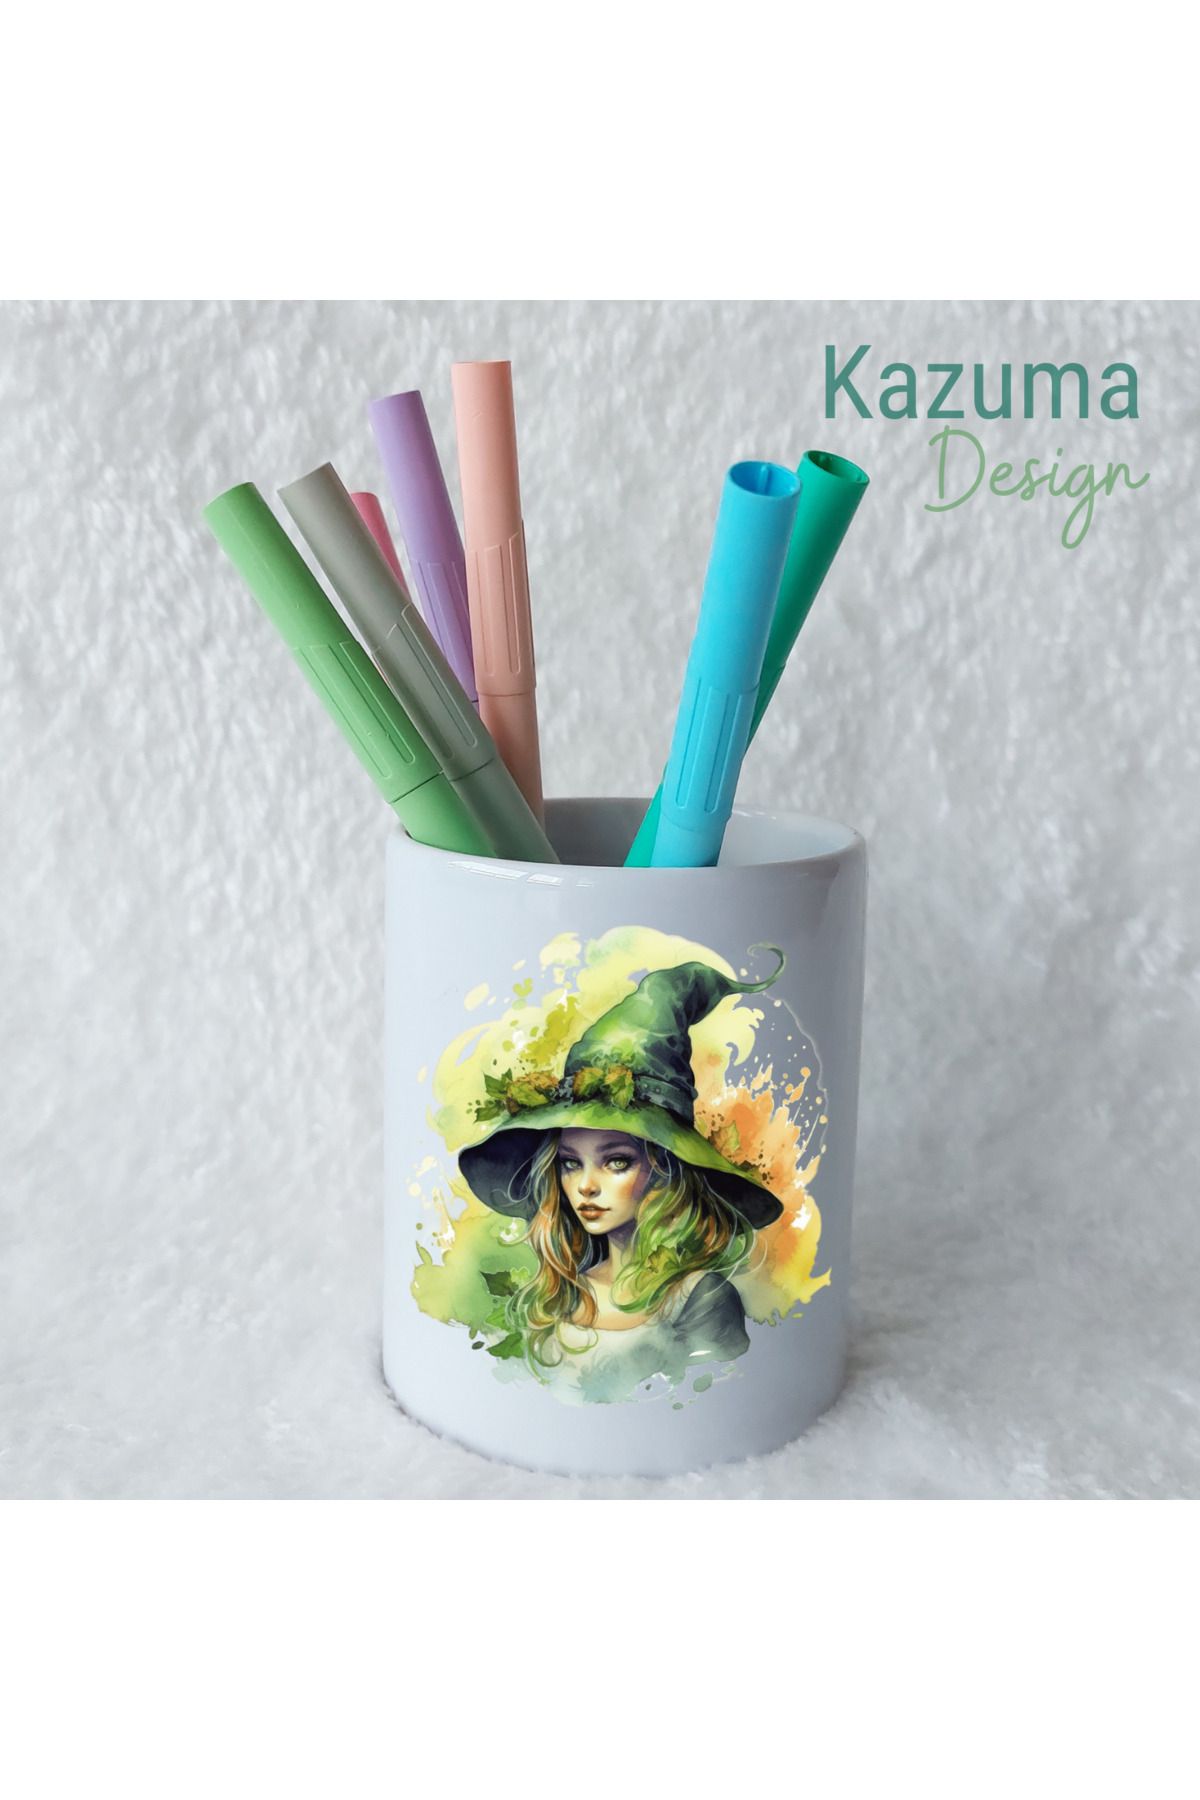 Kazuma Design Sihirbaz Kadın Basklı Seramik Kalemlik Masa Üstü Kalem Kutusu